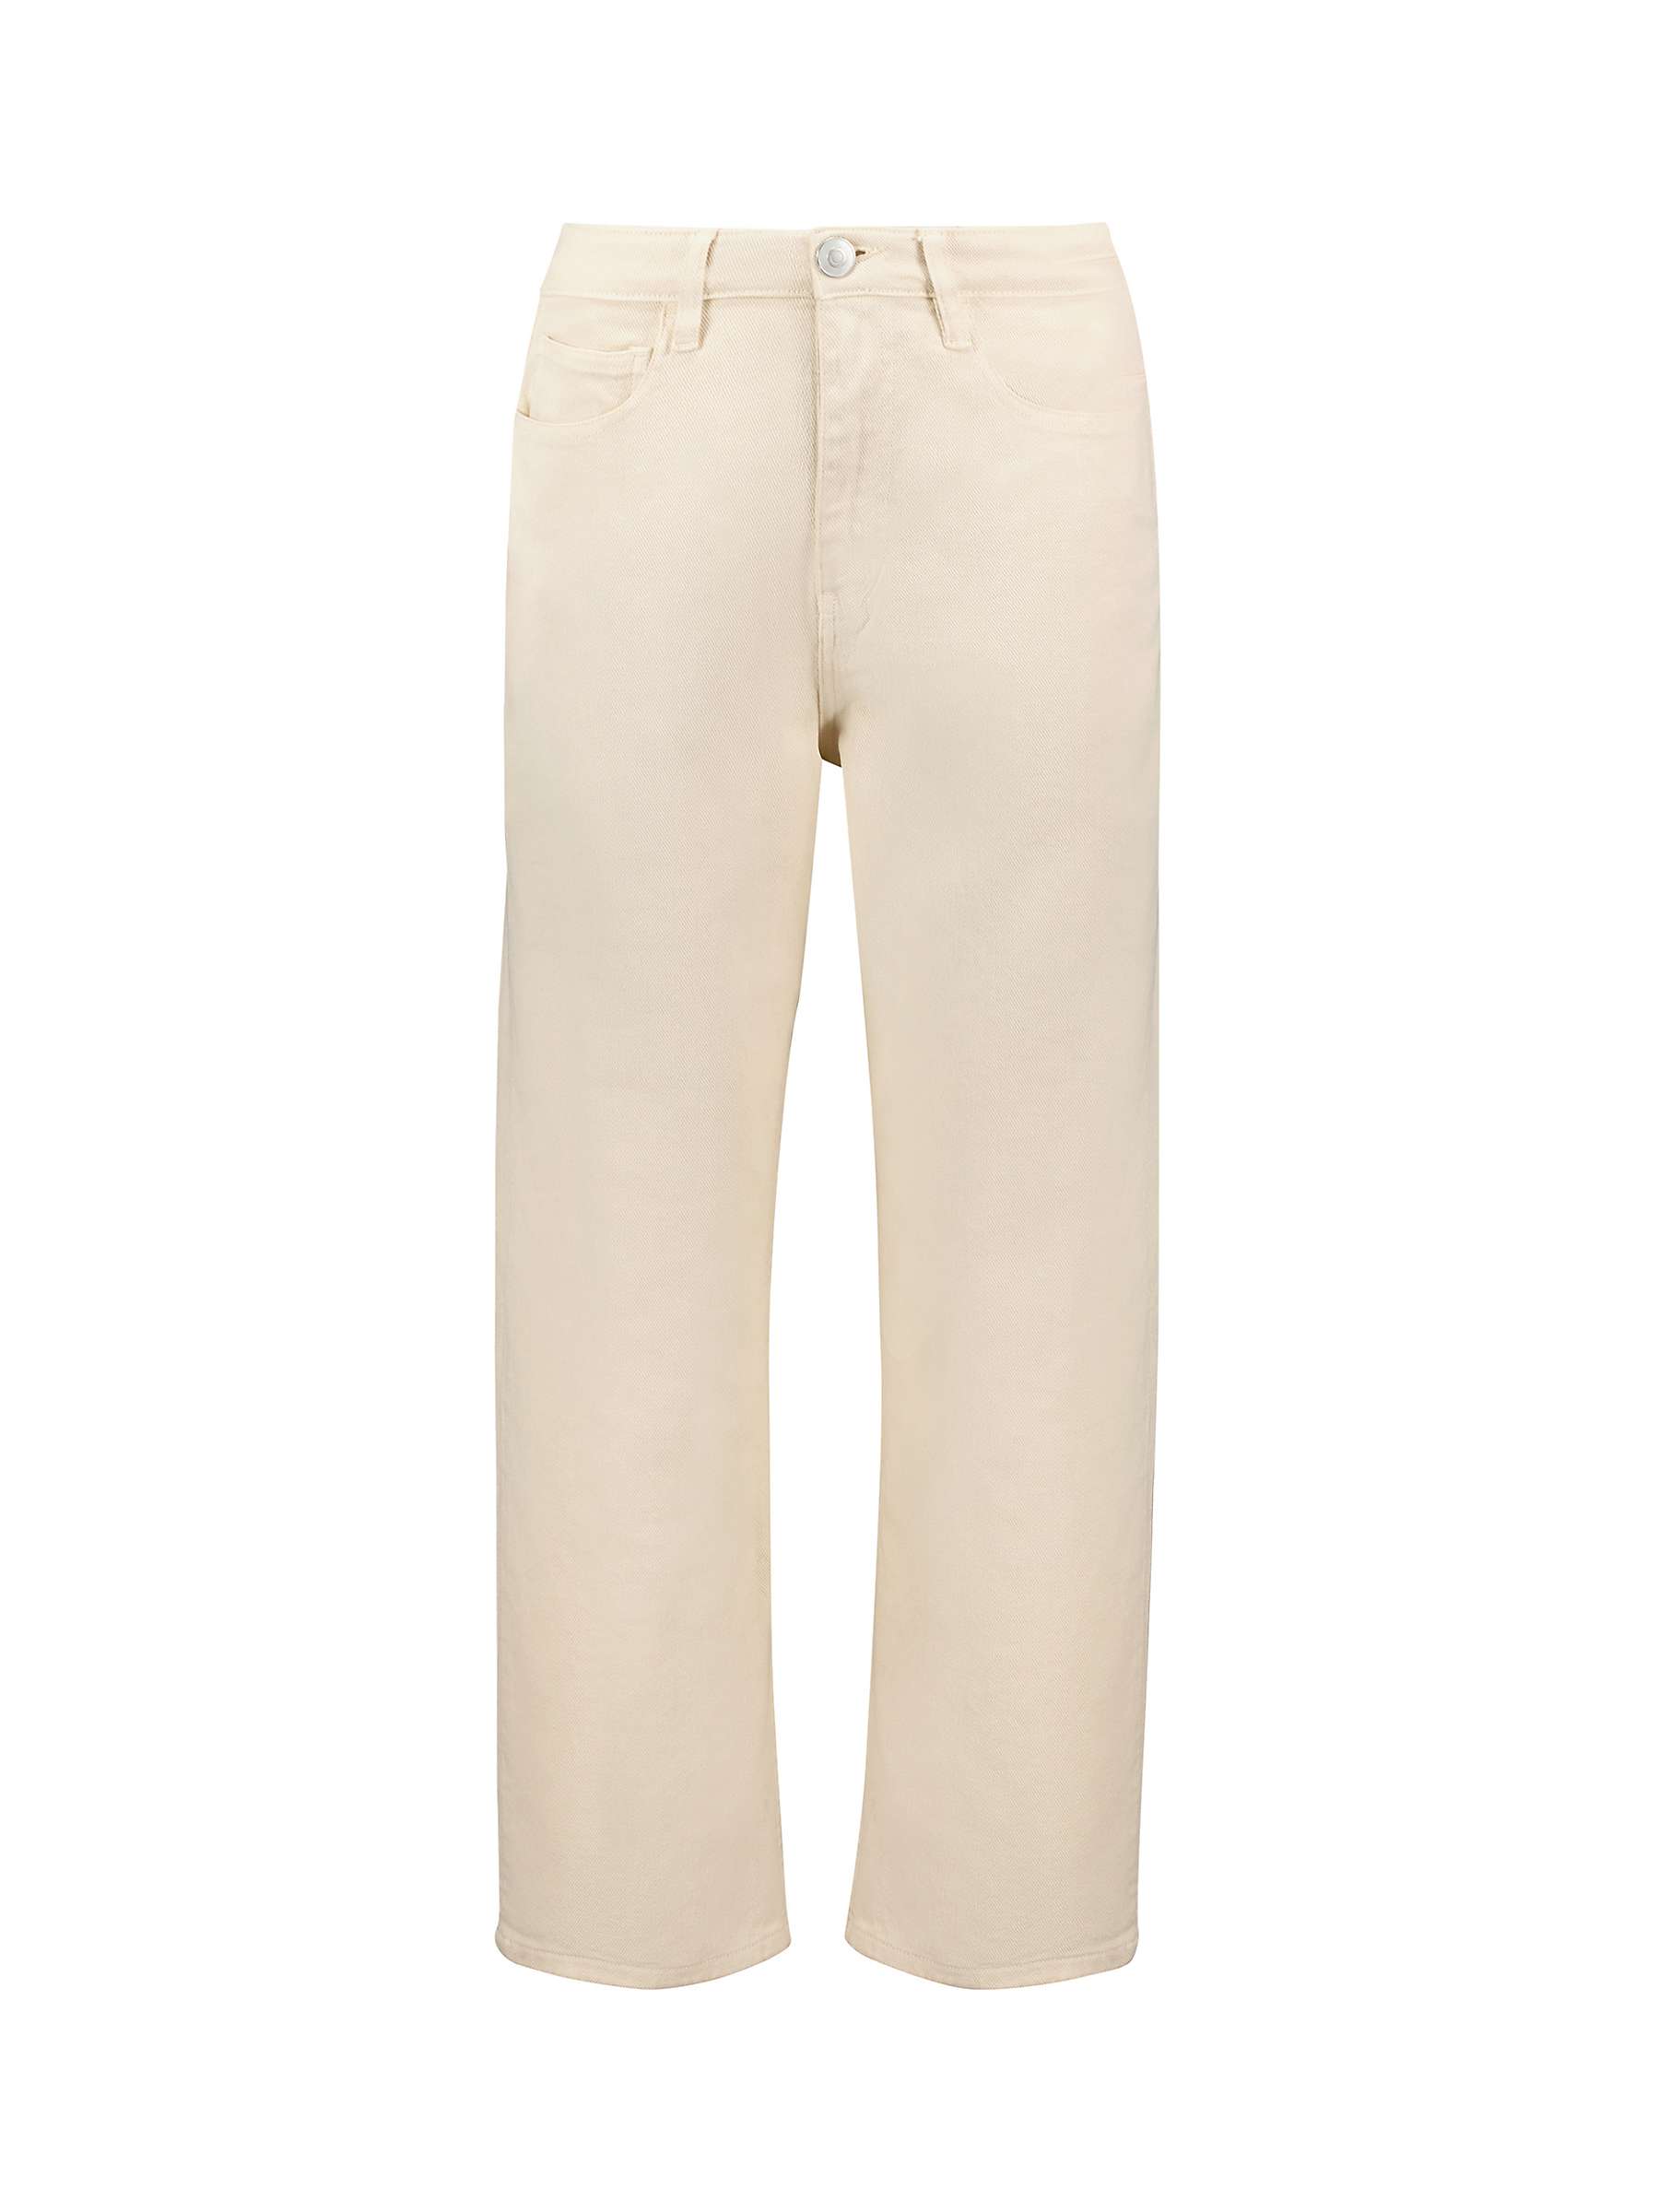 Buy Baukjen Organic Cotton Straight Leg Ankle Grazer Jeans, Ecru Online at johnlewis.com